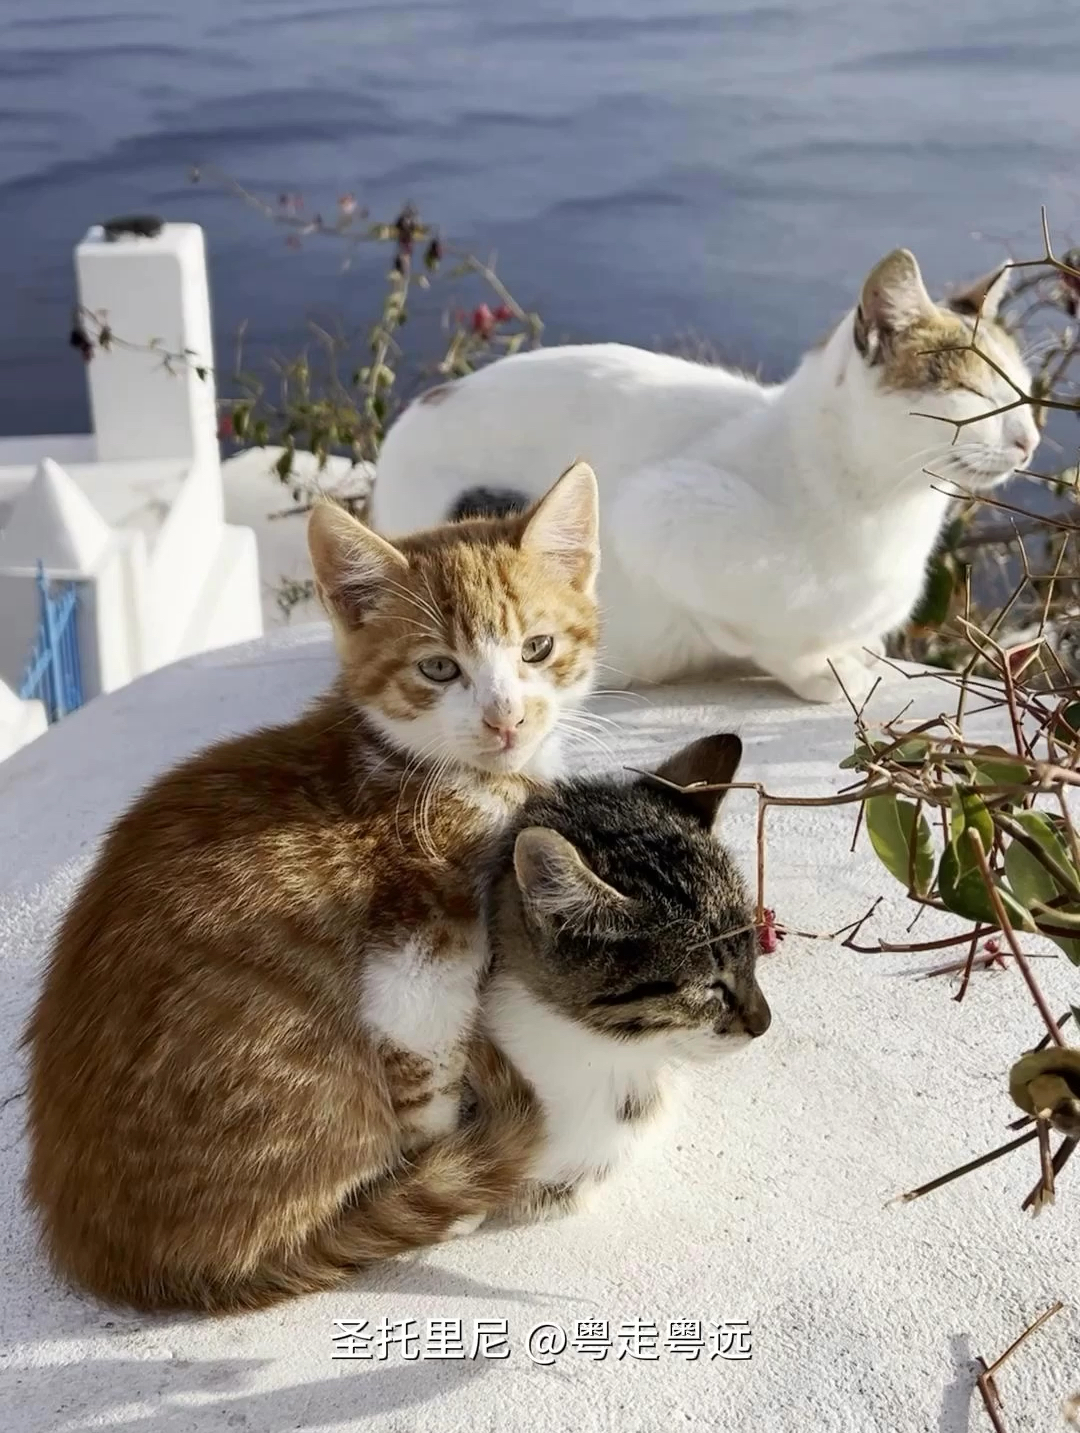 分享在希腊圣托里尼随手拍到的小猫 被治愈了